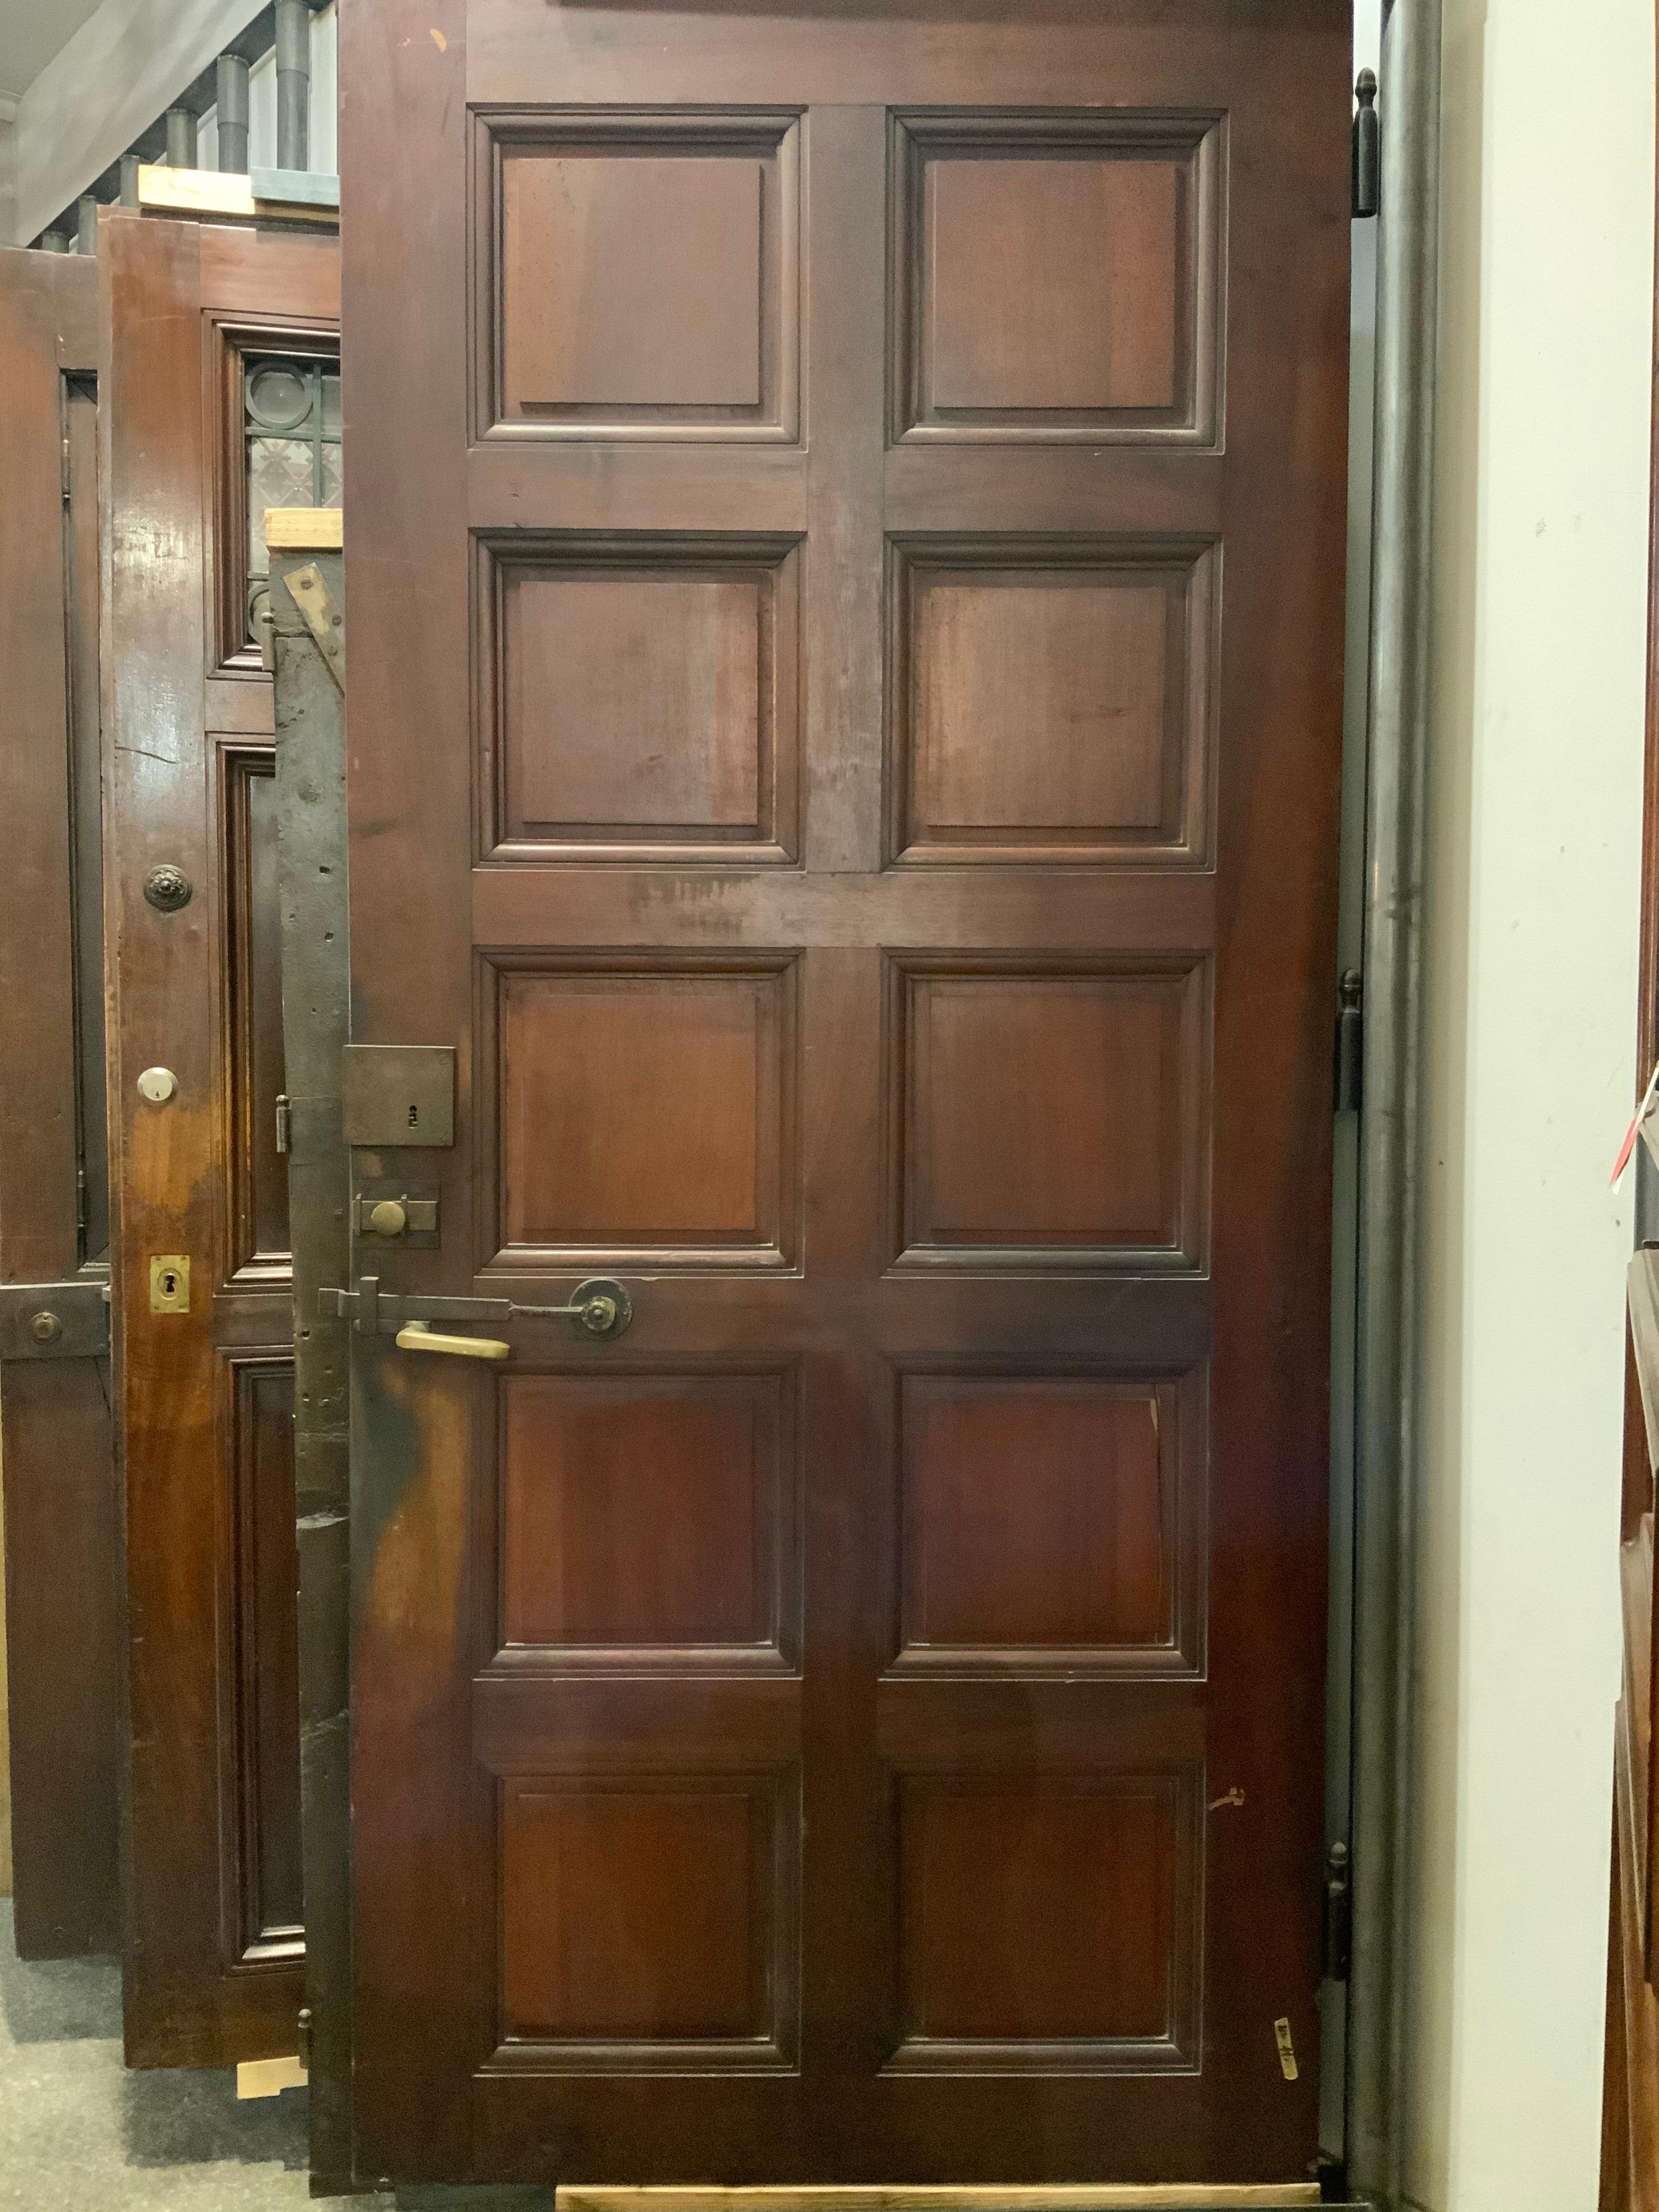 19th century door